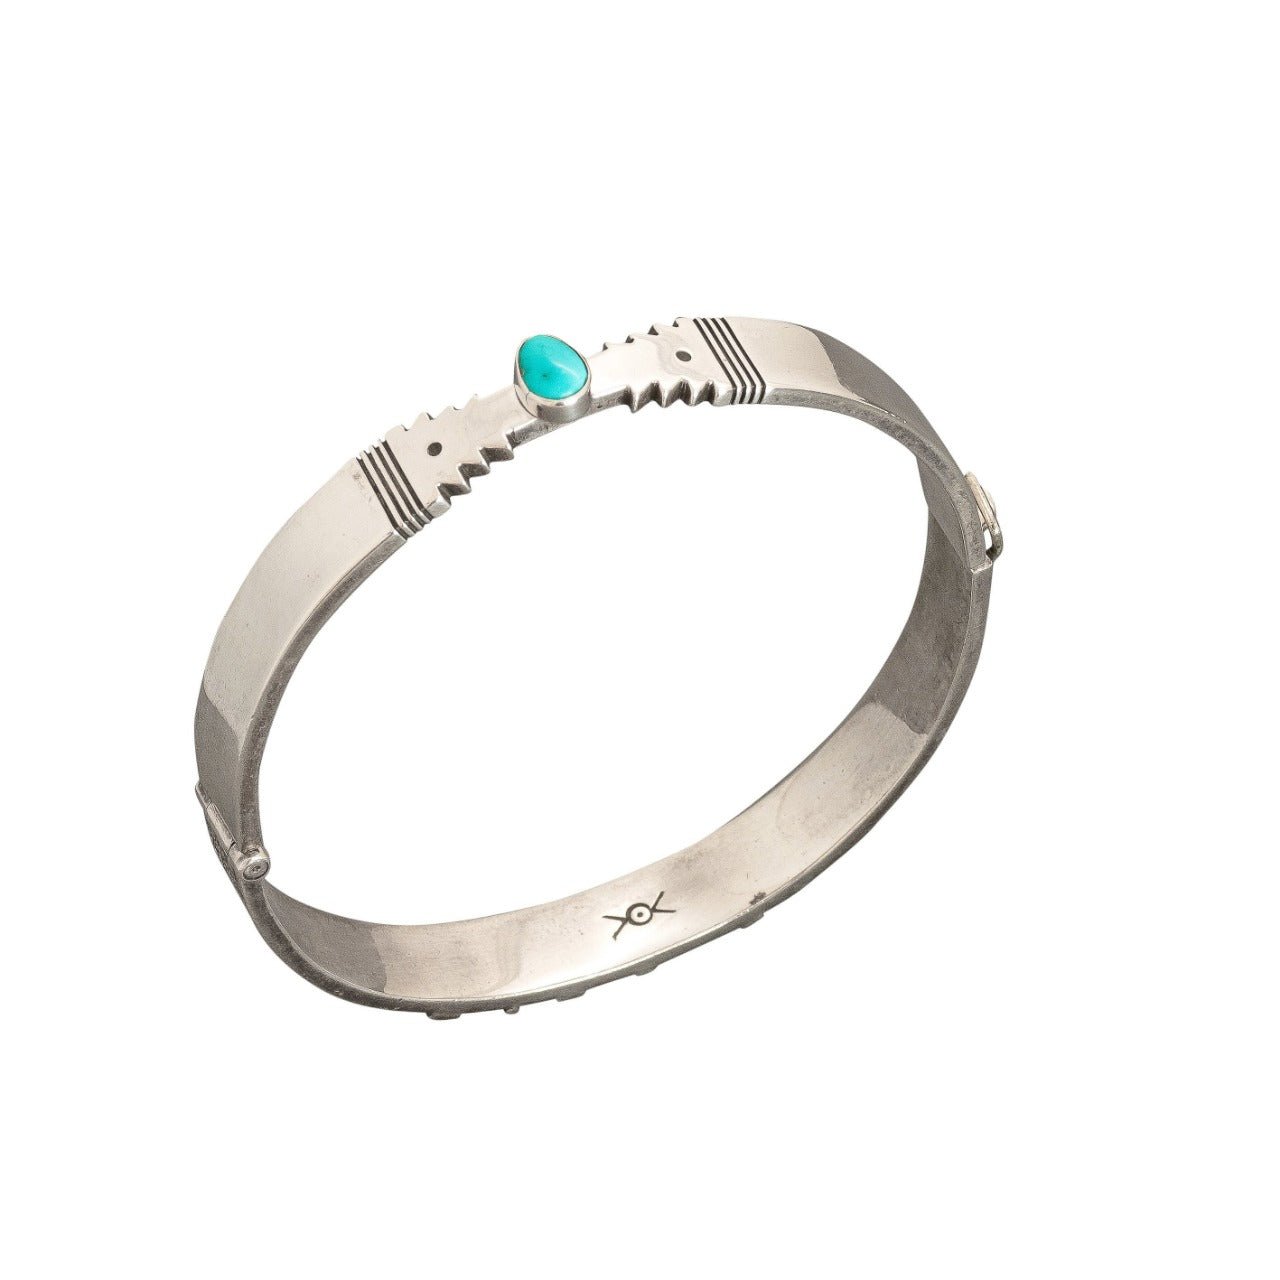 Norbert Peshlakai Sterling Silver Bangle Bracelet With Turquoise - Turquoise & Tufa